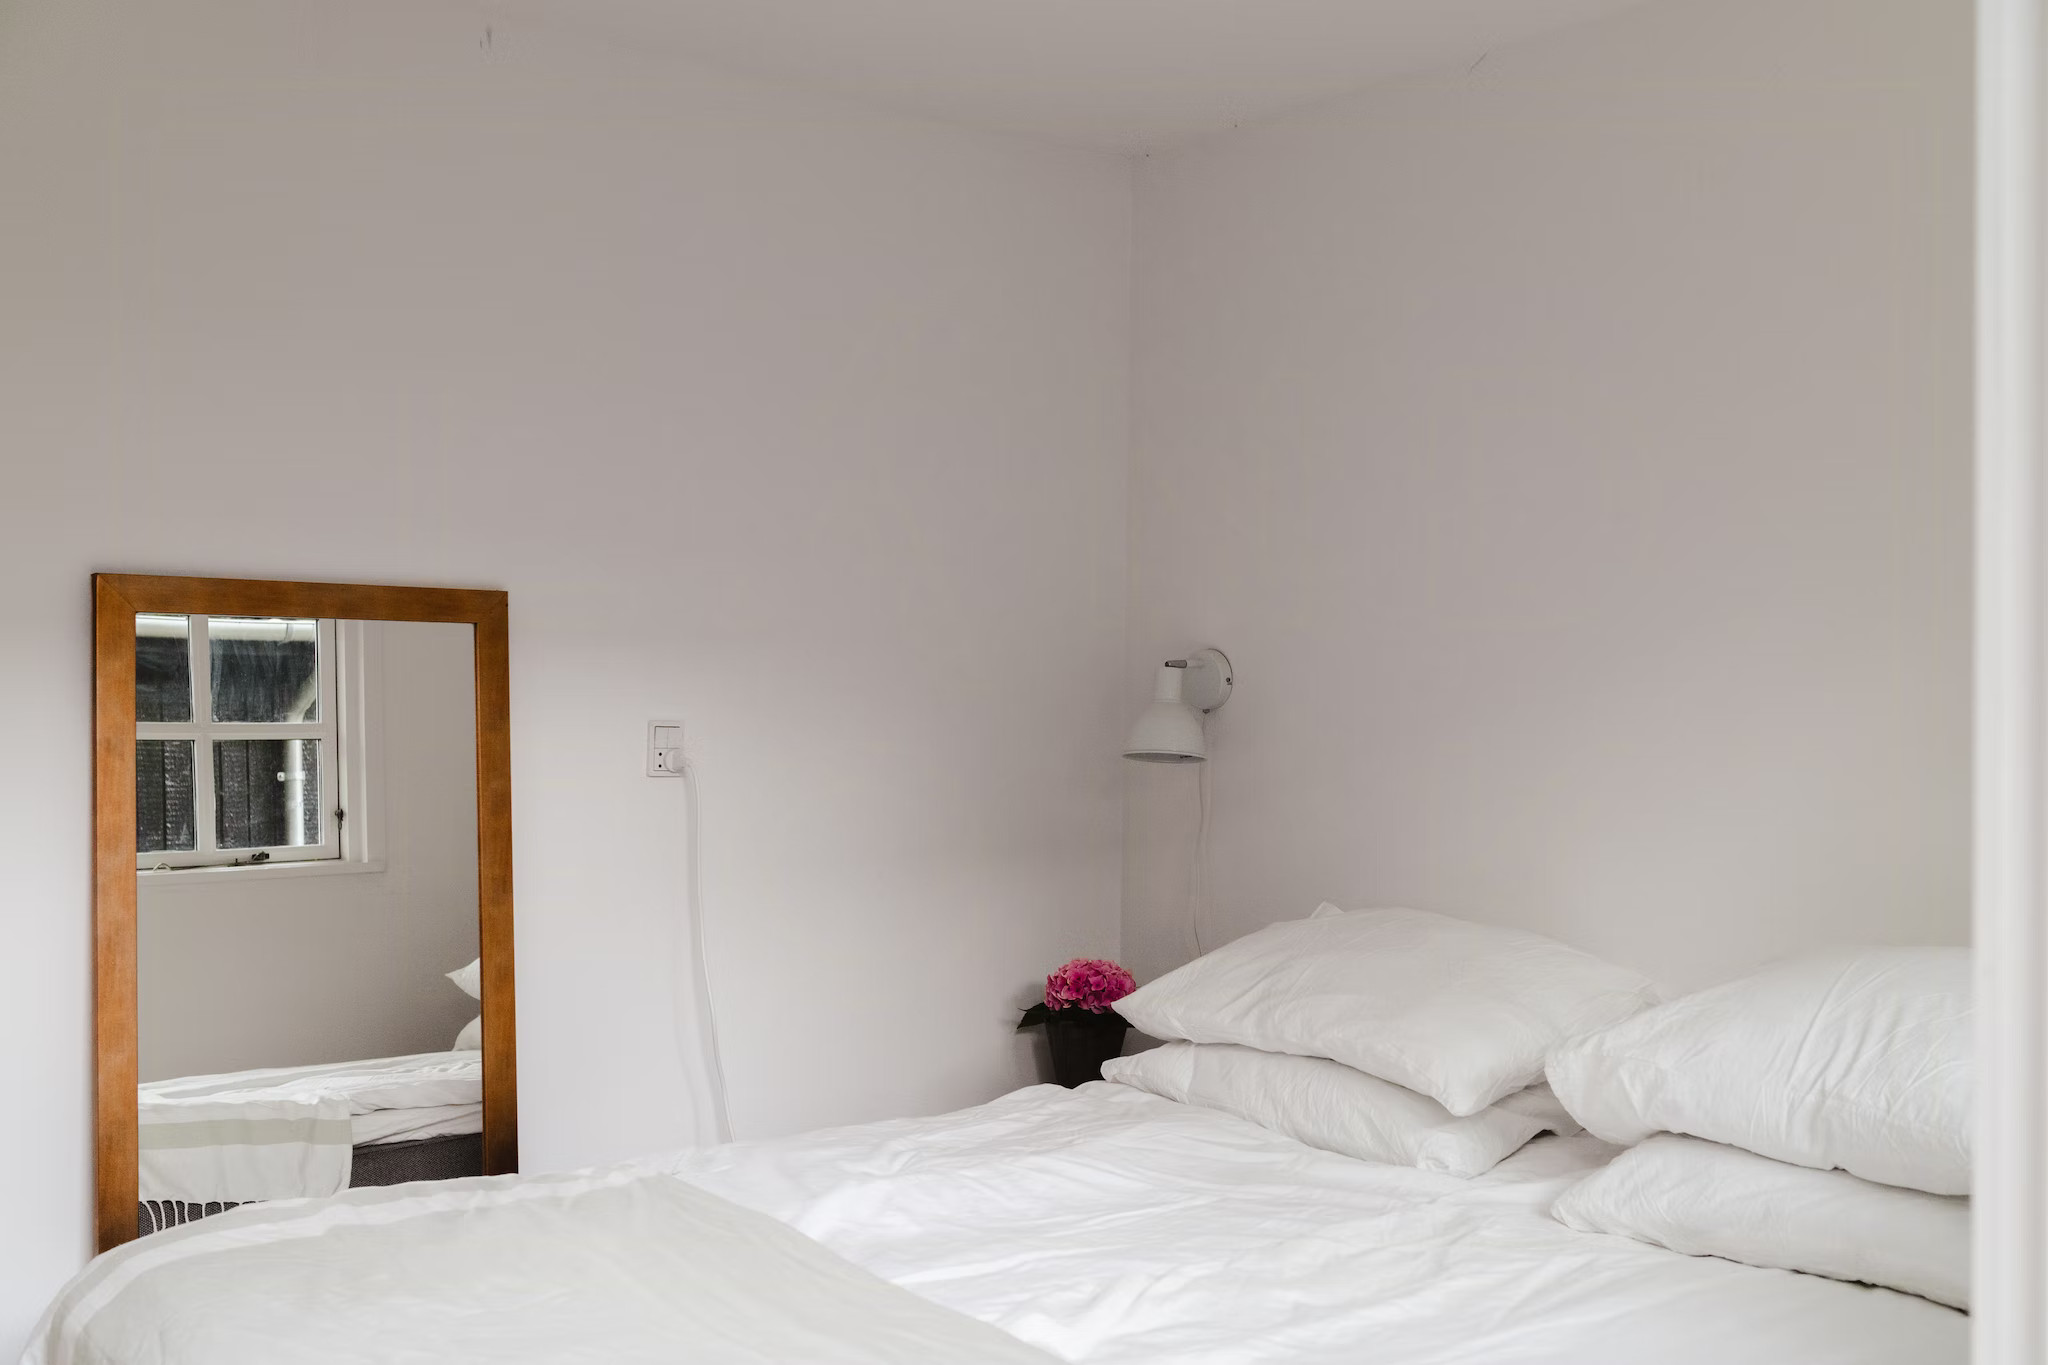 chambre minimaliste décoration scandinave